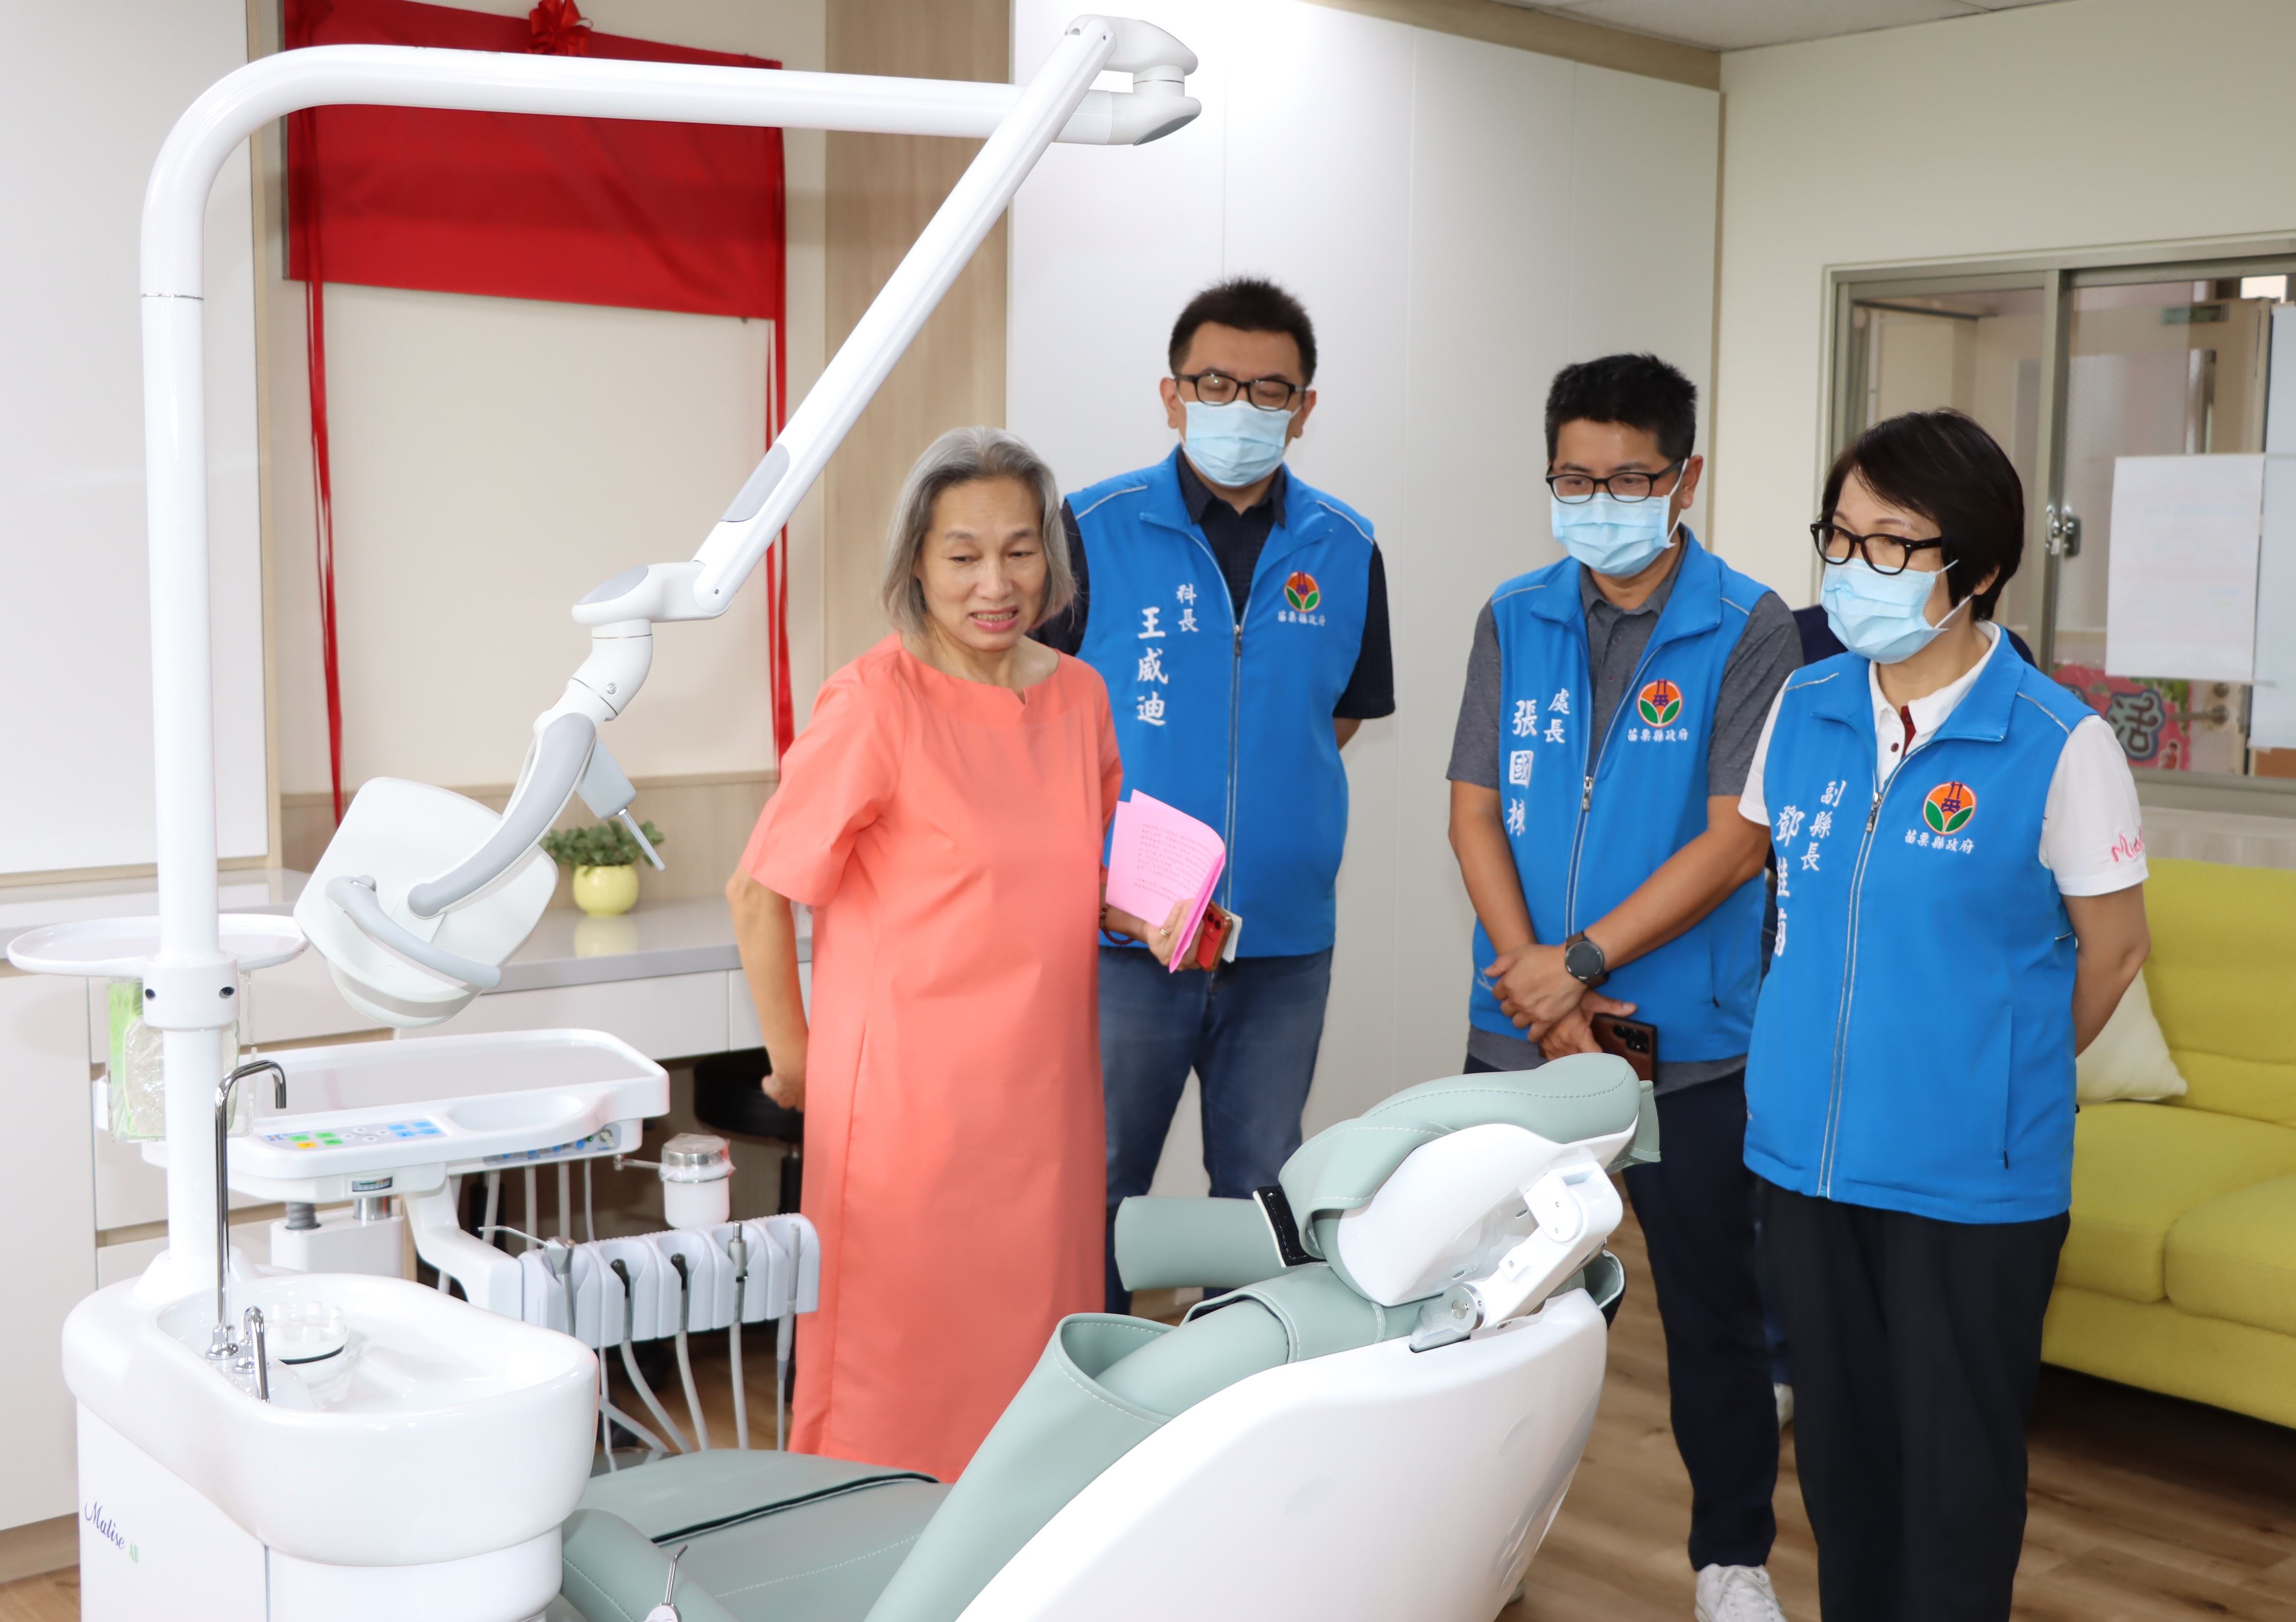 苗栗扶輪社與牙醫師公會合作更新幼安牙醫診療室設備提供口腔衛生服務